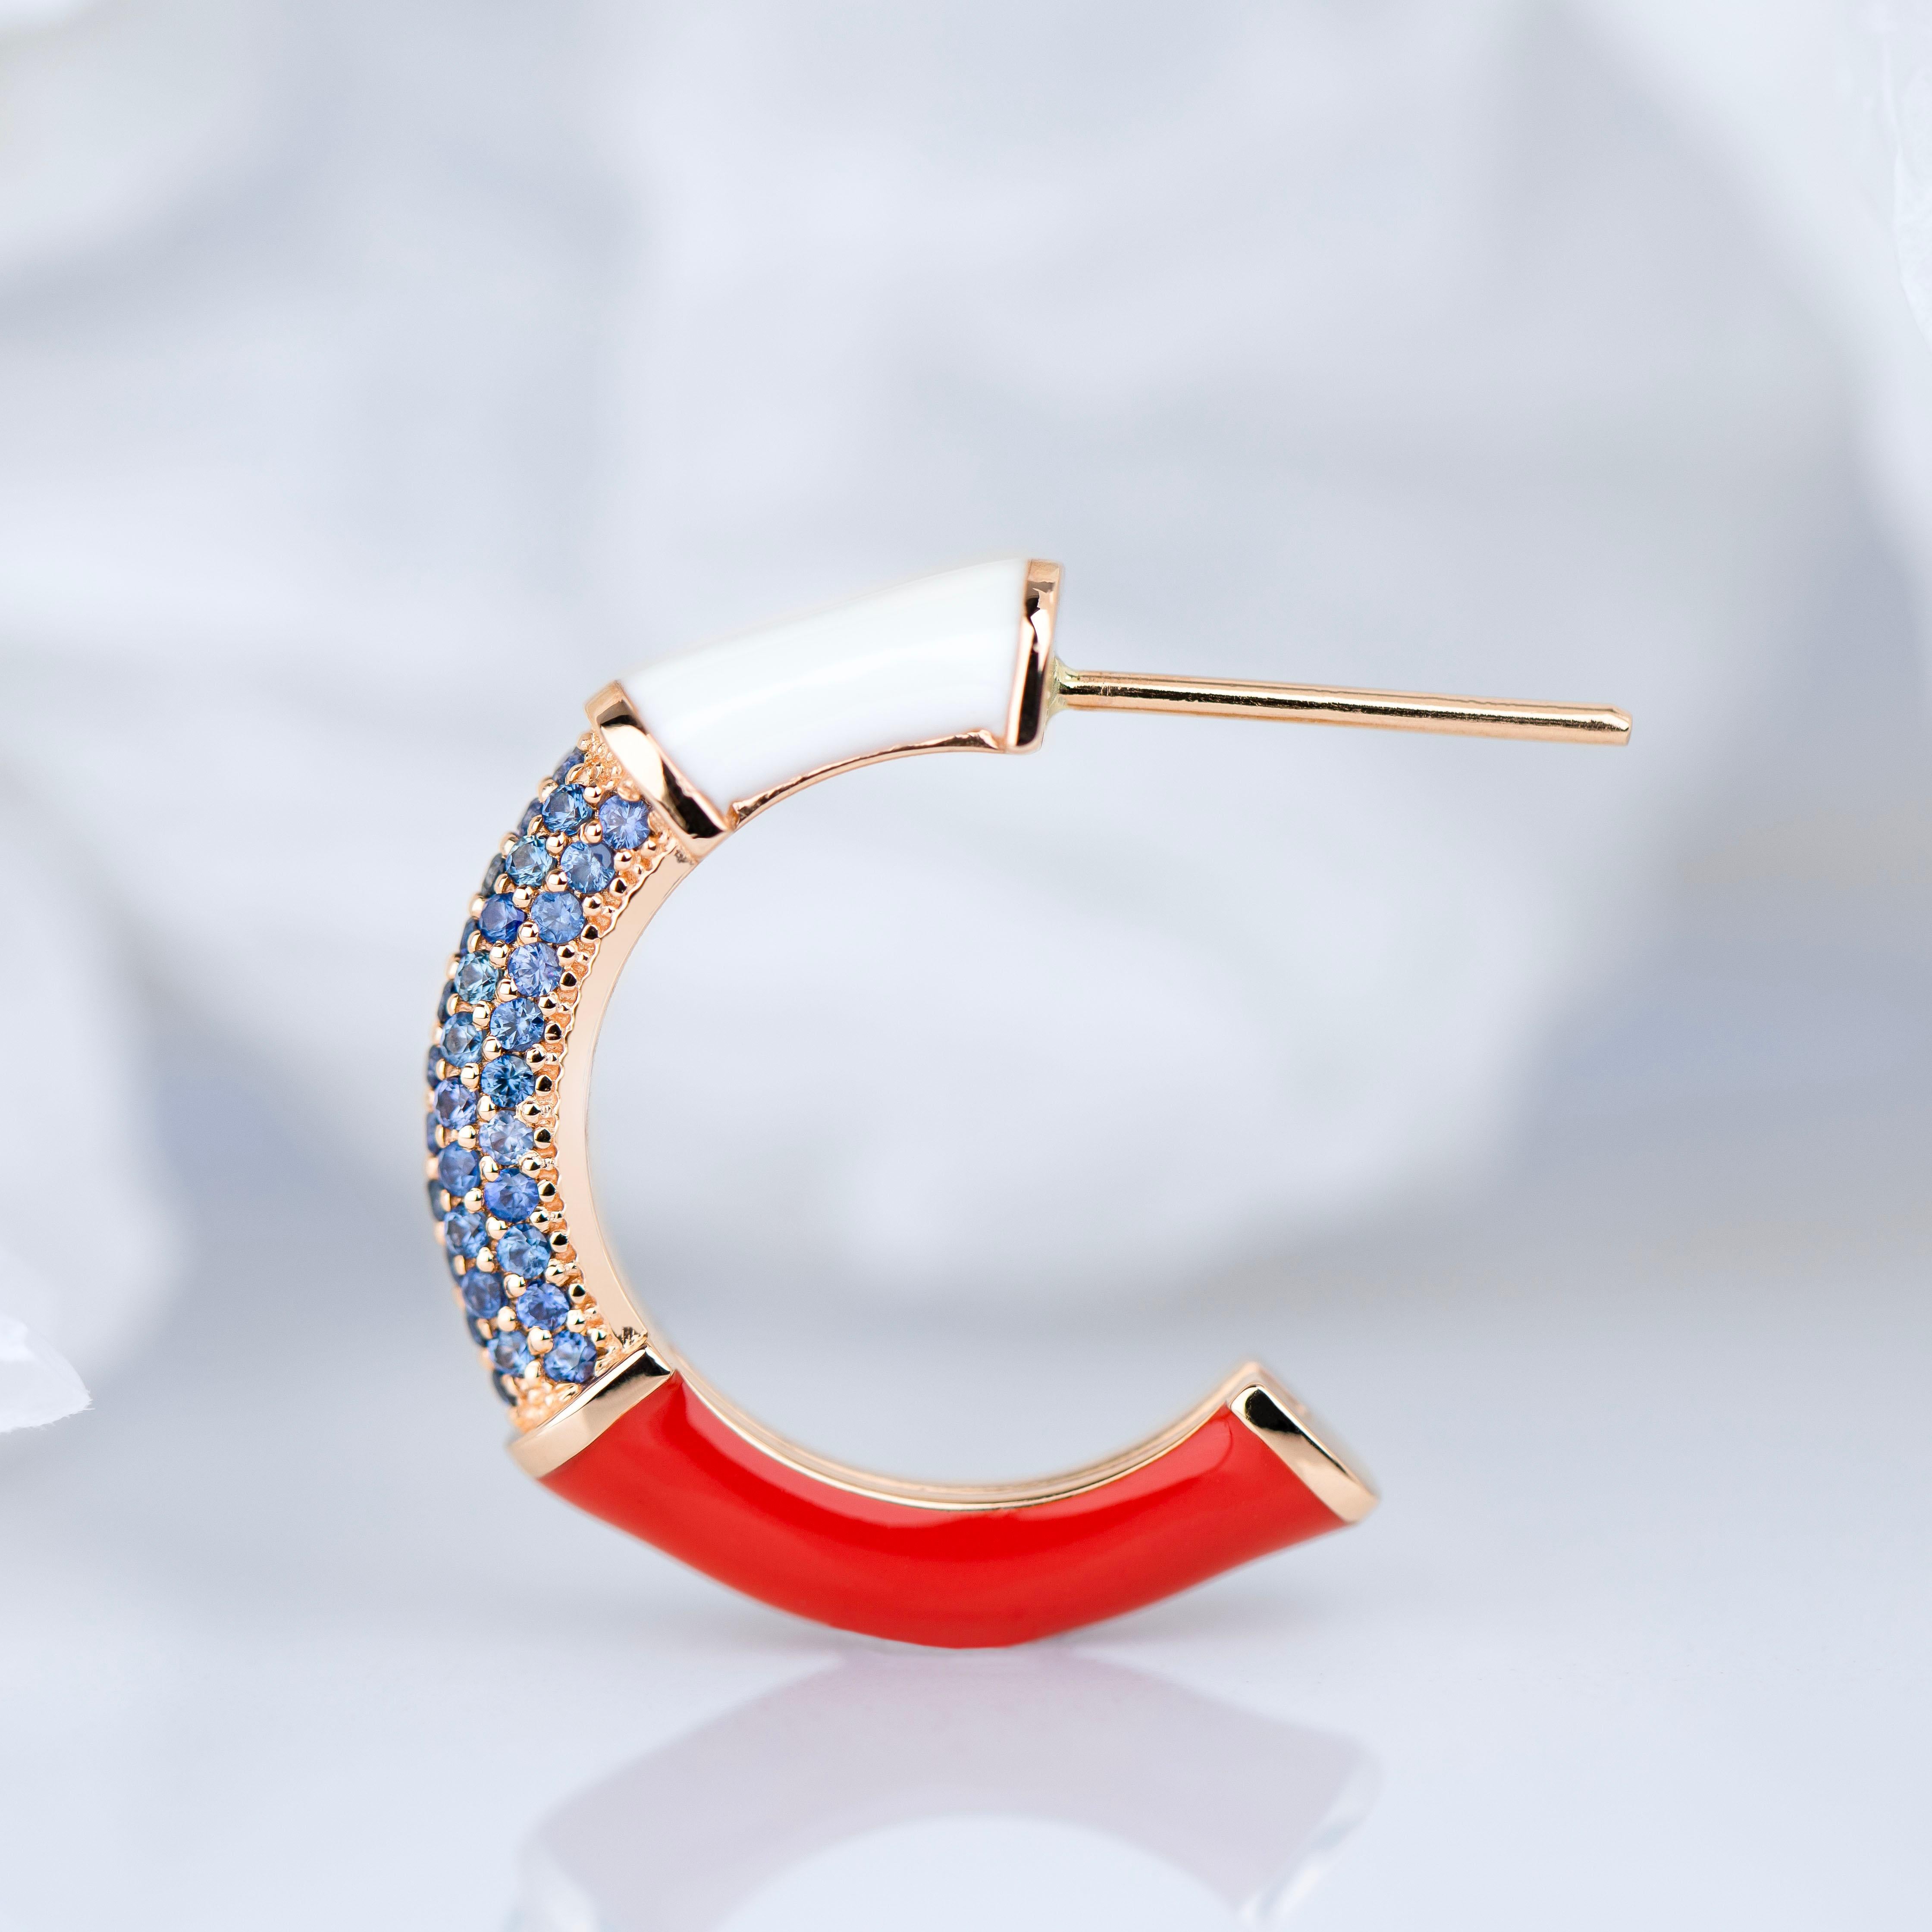 Gold-Ohrring im Art-déco-Stil mit Saphirstein, Bumble-Farben-Ohrring

Dieser Ring wurde aus hochwertigen MATERIALEN und in hervorragender Handarbeit hergestellt. Ich garantiere für die Qualitätssicherung meiner Handarbeit und meiner MATERIALIEN. Für